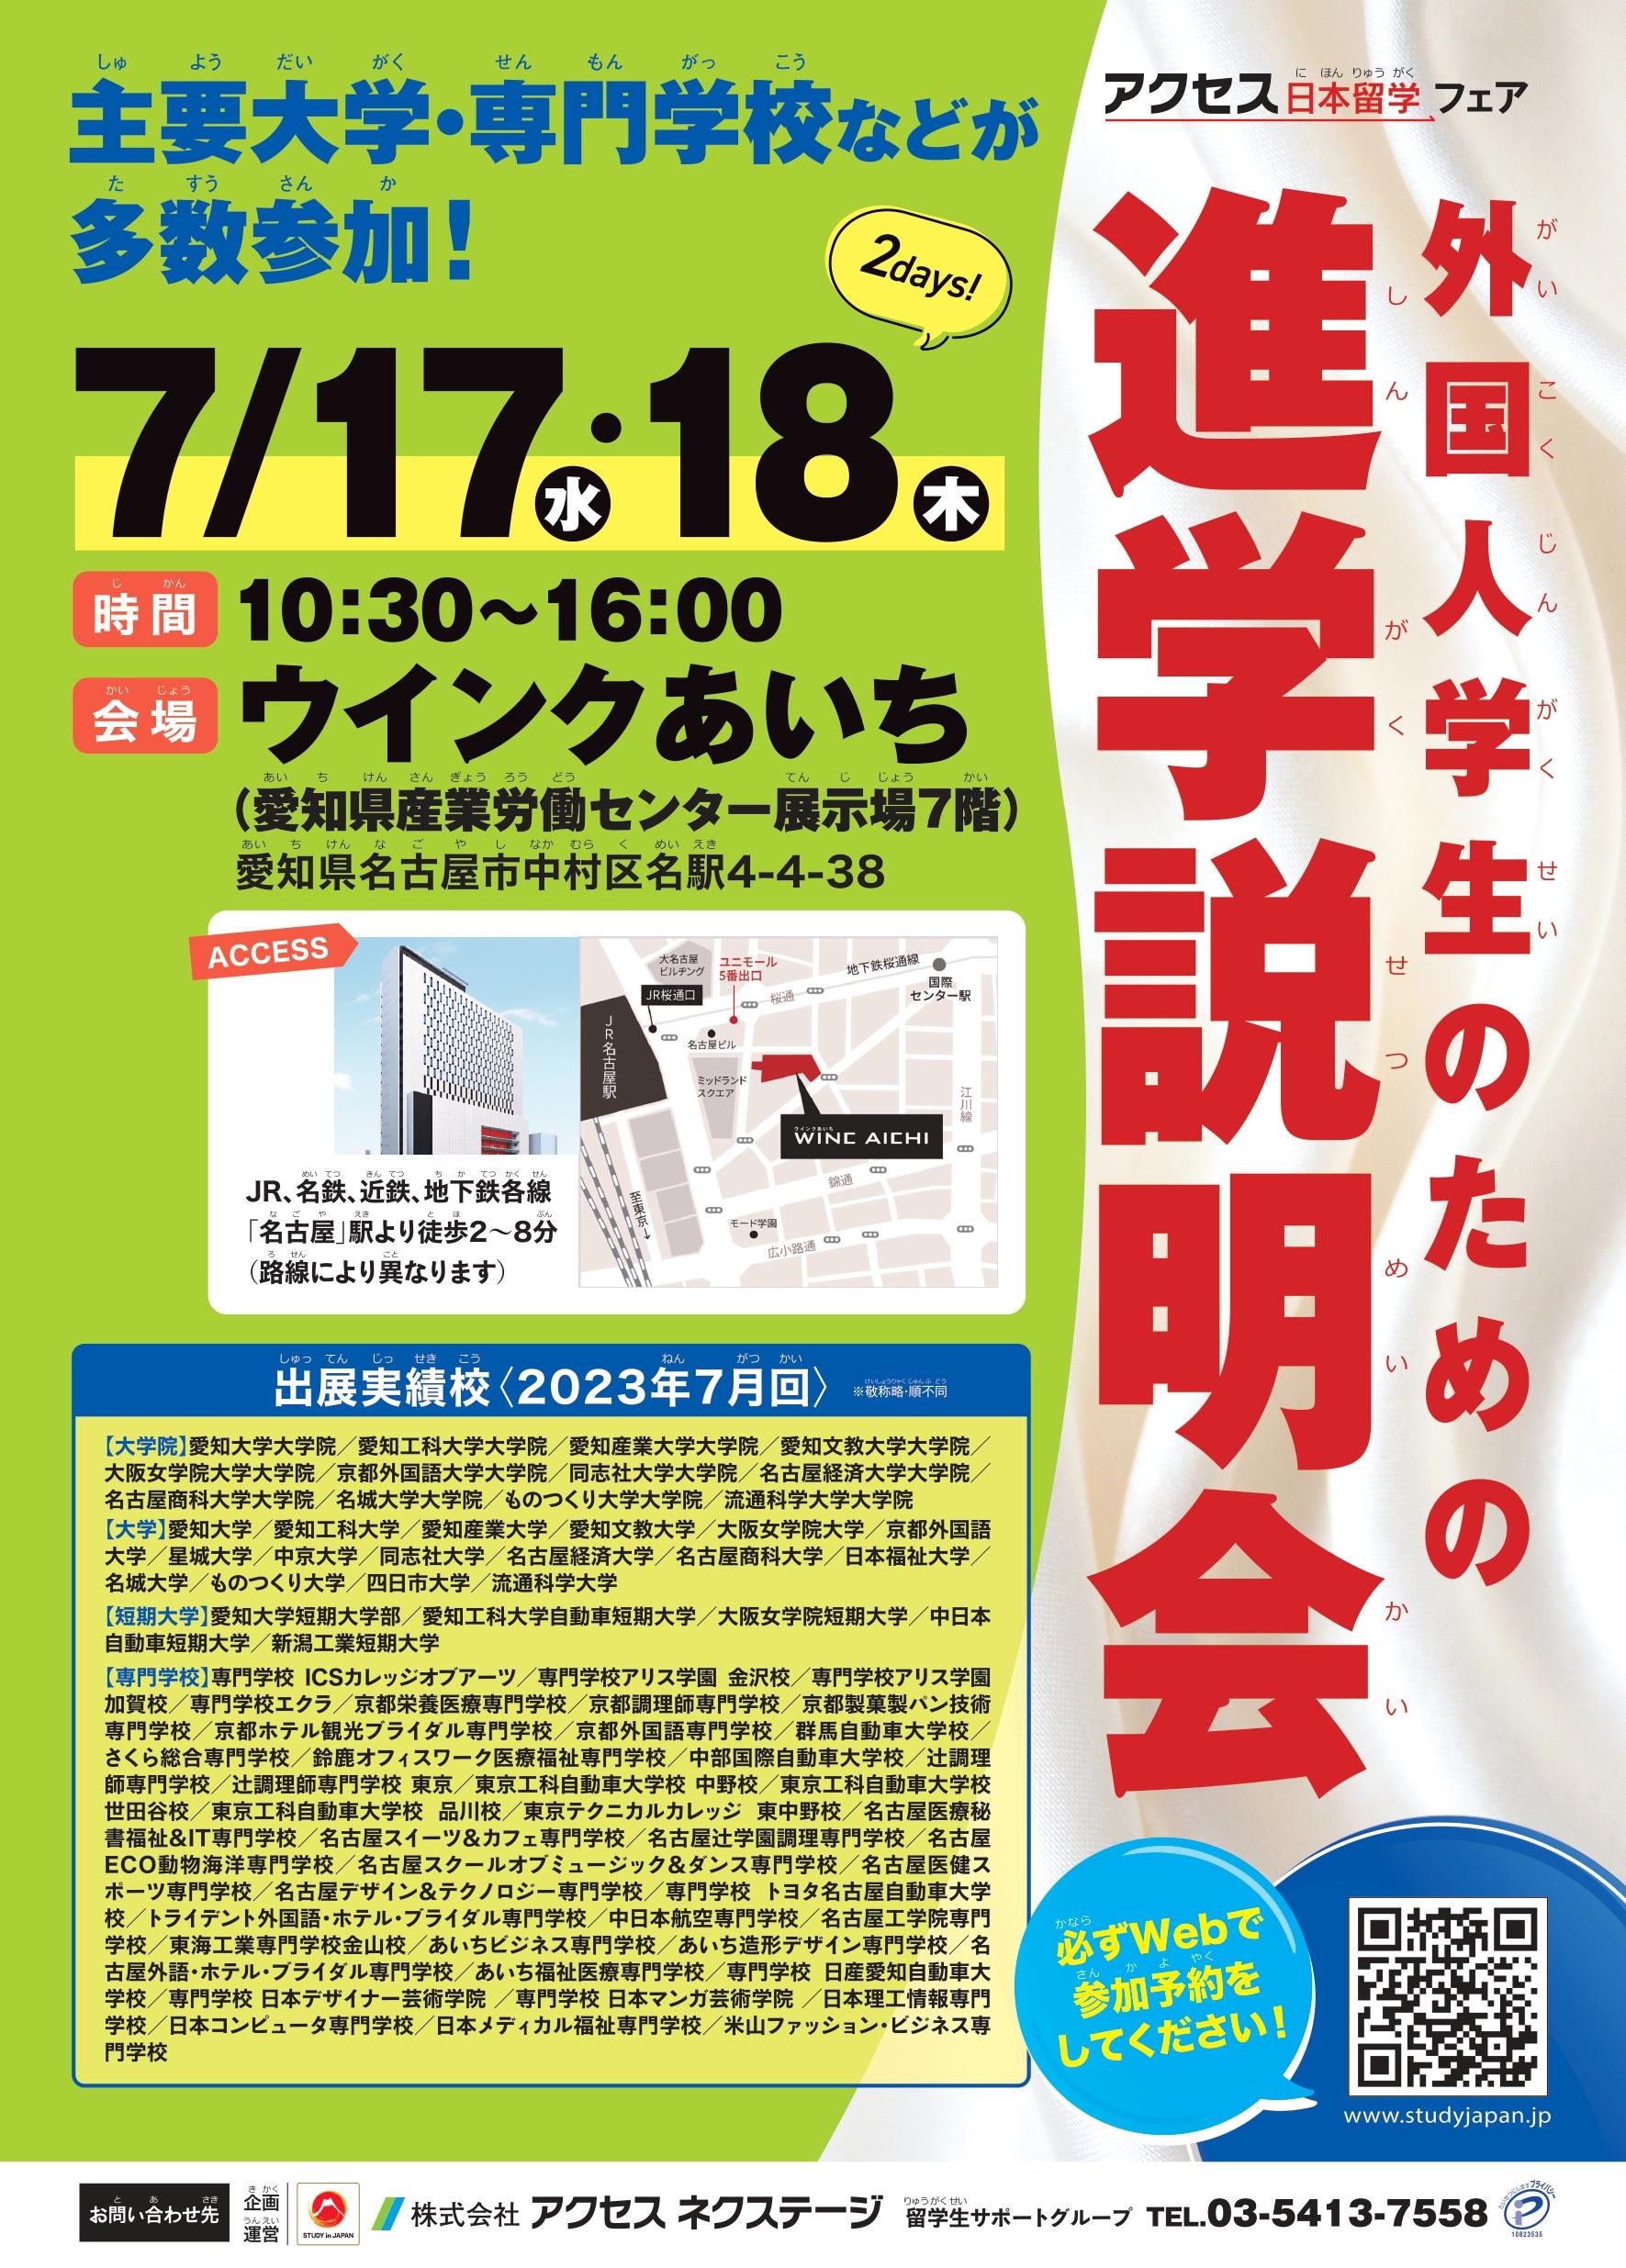 [Nagoya] Các buổi hướng dẫn về trường học dành cho sinh viên nước ngoài tháng 7 đến 18 tháng 7 năm 2024_Wink Aichi (Phòng triển lãm Trung tâm Lao động Công nghiệp Tỉnh Aichi)